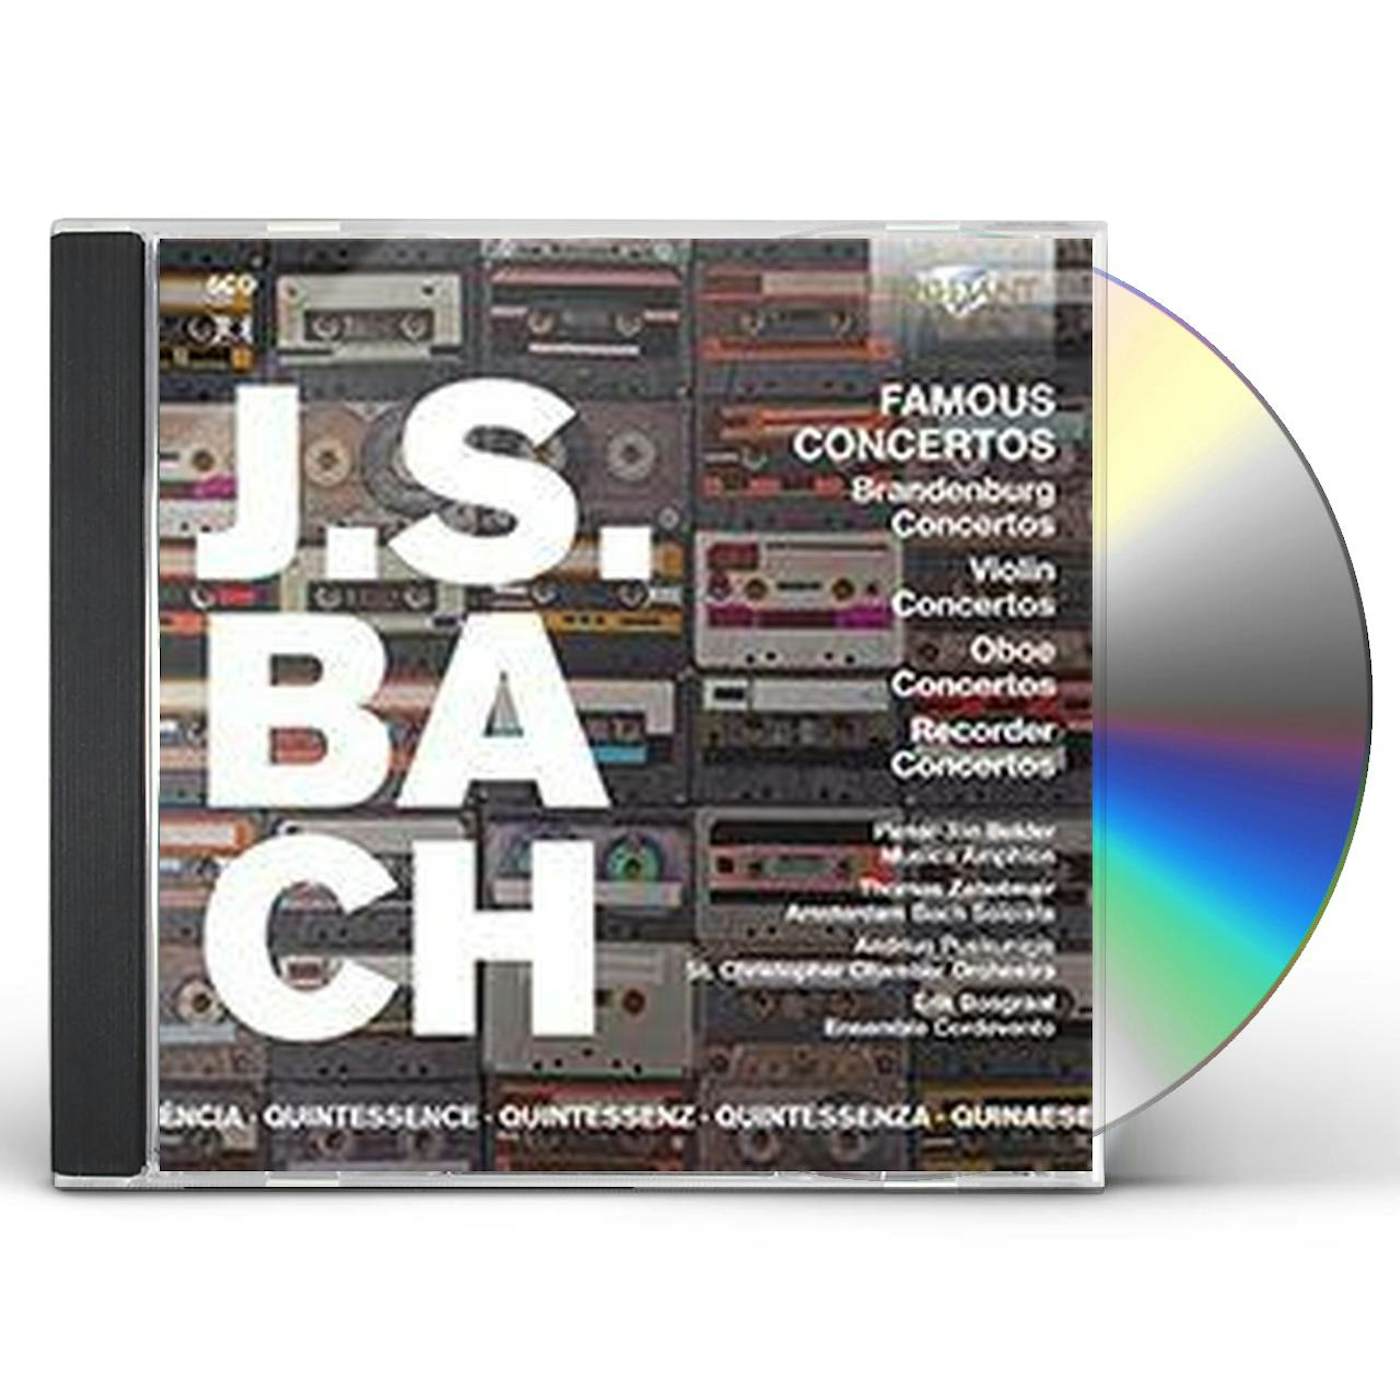 Johann Sebastian Bach FAMOUS CONCERTOS CD